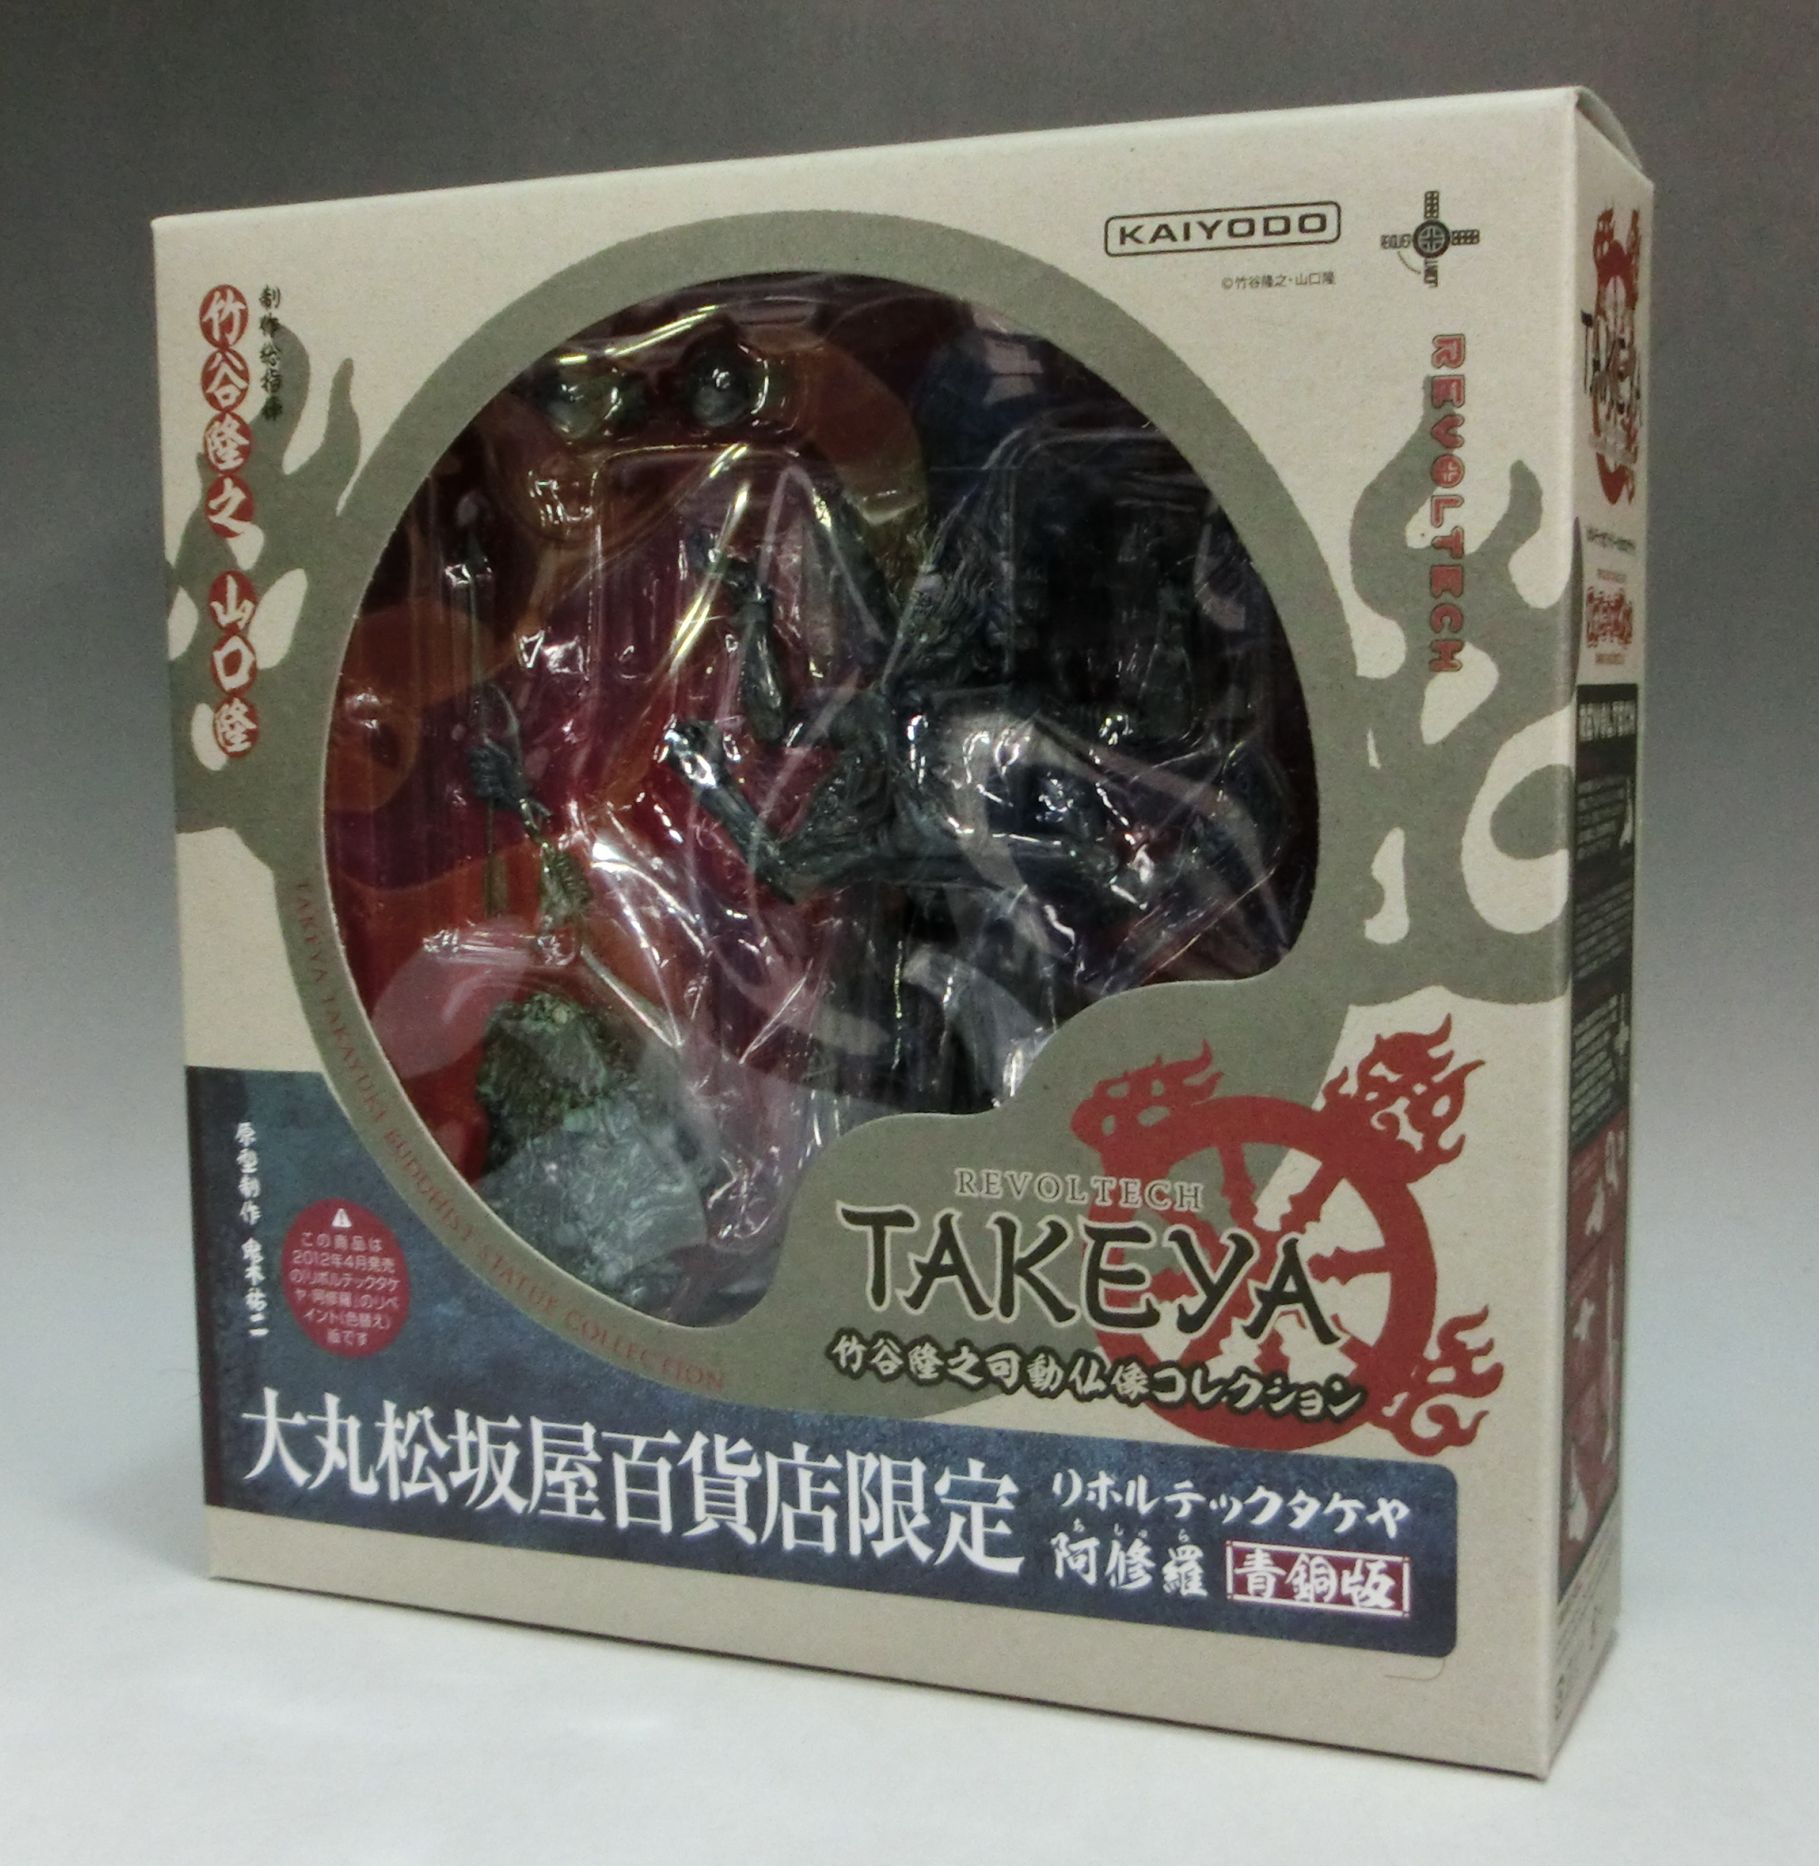 REVOLTECH Takeya Ashura Bronze ver. Daimaru-Matsuzakaya store Limited Color